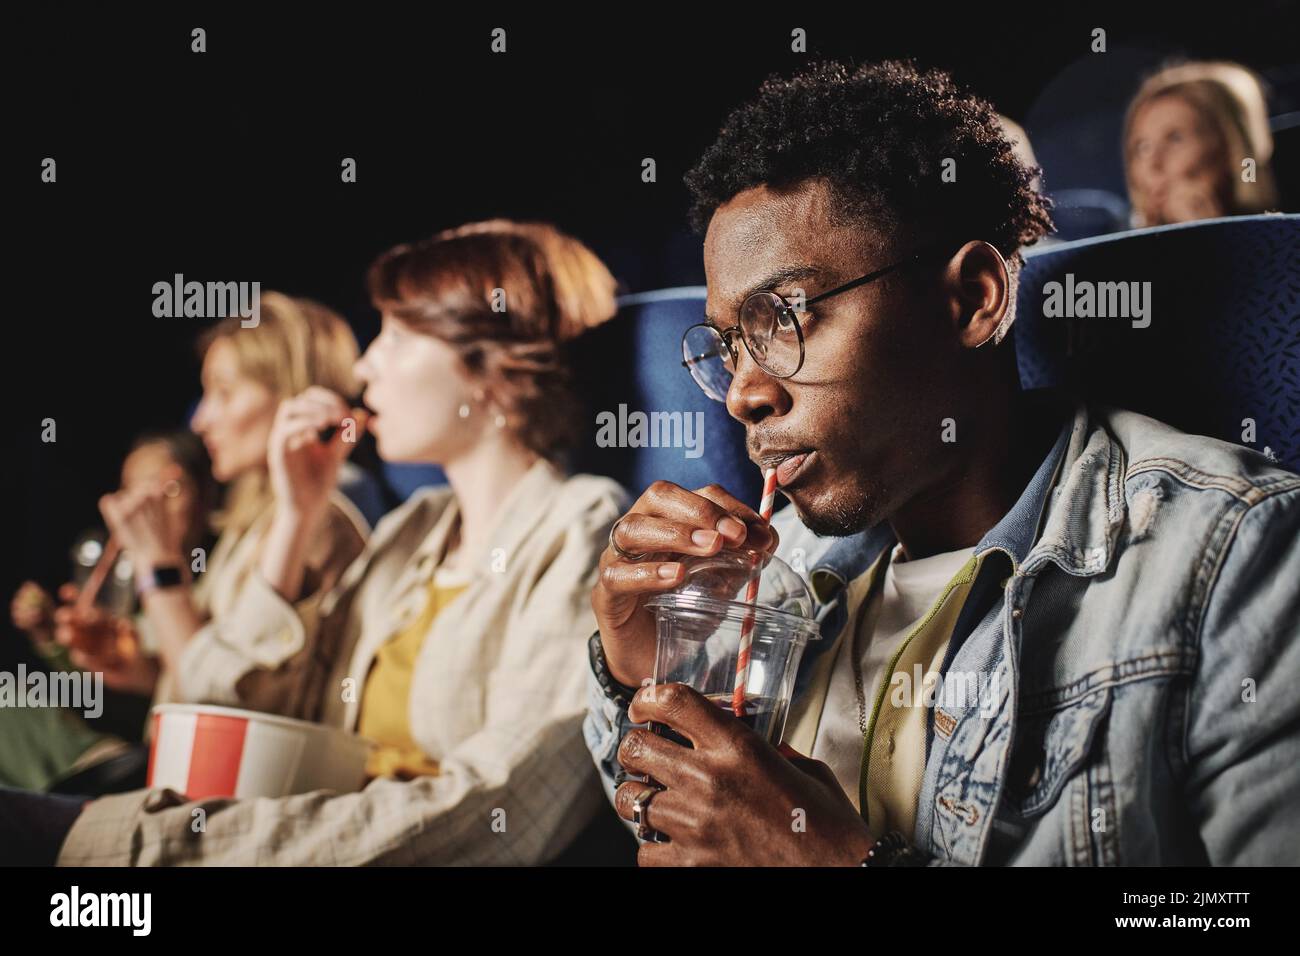 Toma de enfoque selectivo de un joven negro con estilo que llevaba gafas bebiendo cola mientras ve una película en el cine Foto de stock